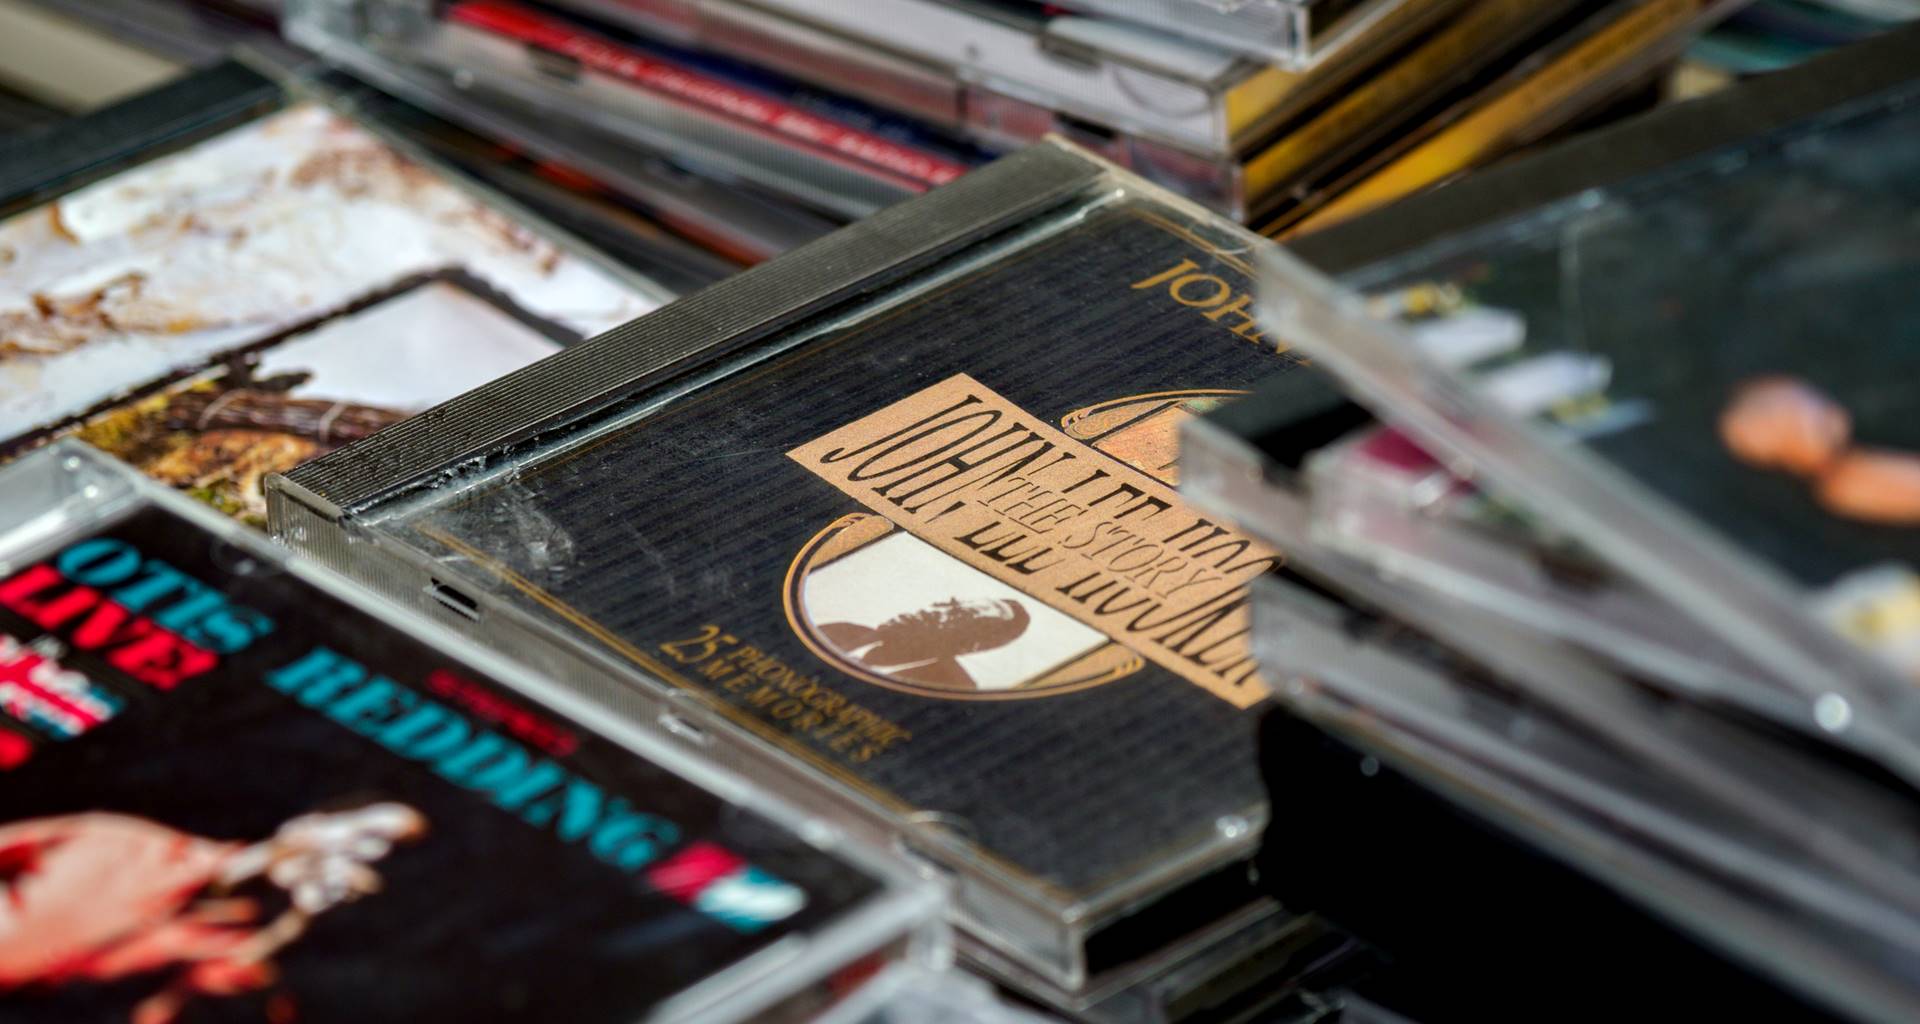 Hoofdkwartier Hectare zuiger Doosje van CD of cassettebandje weggooien | Afvalscheidingswijzer